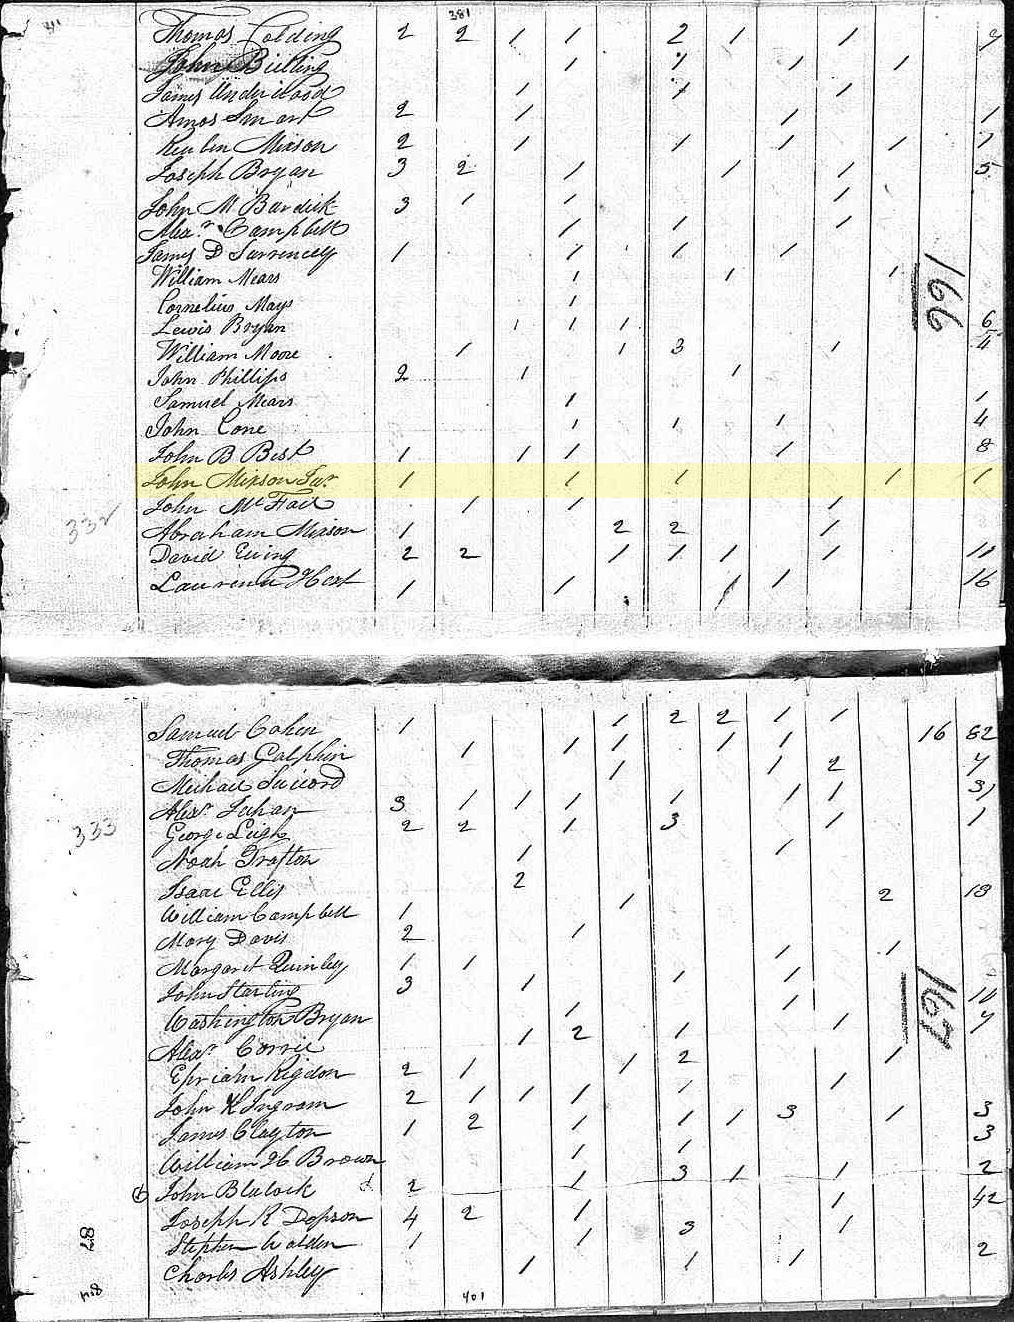 Census-1810-SouthCarolina-Darlington-Mixon,John